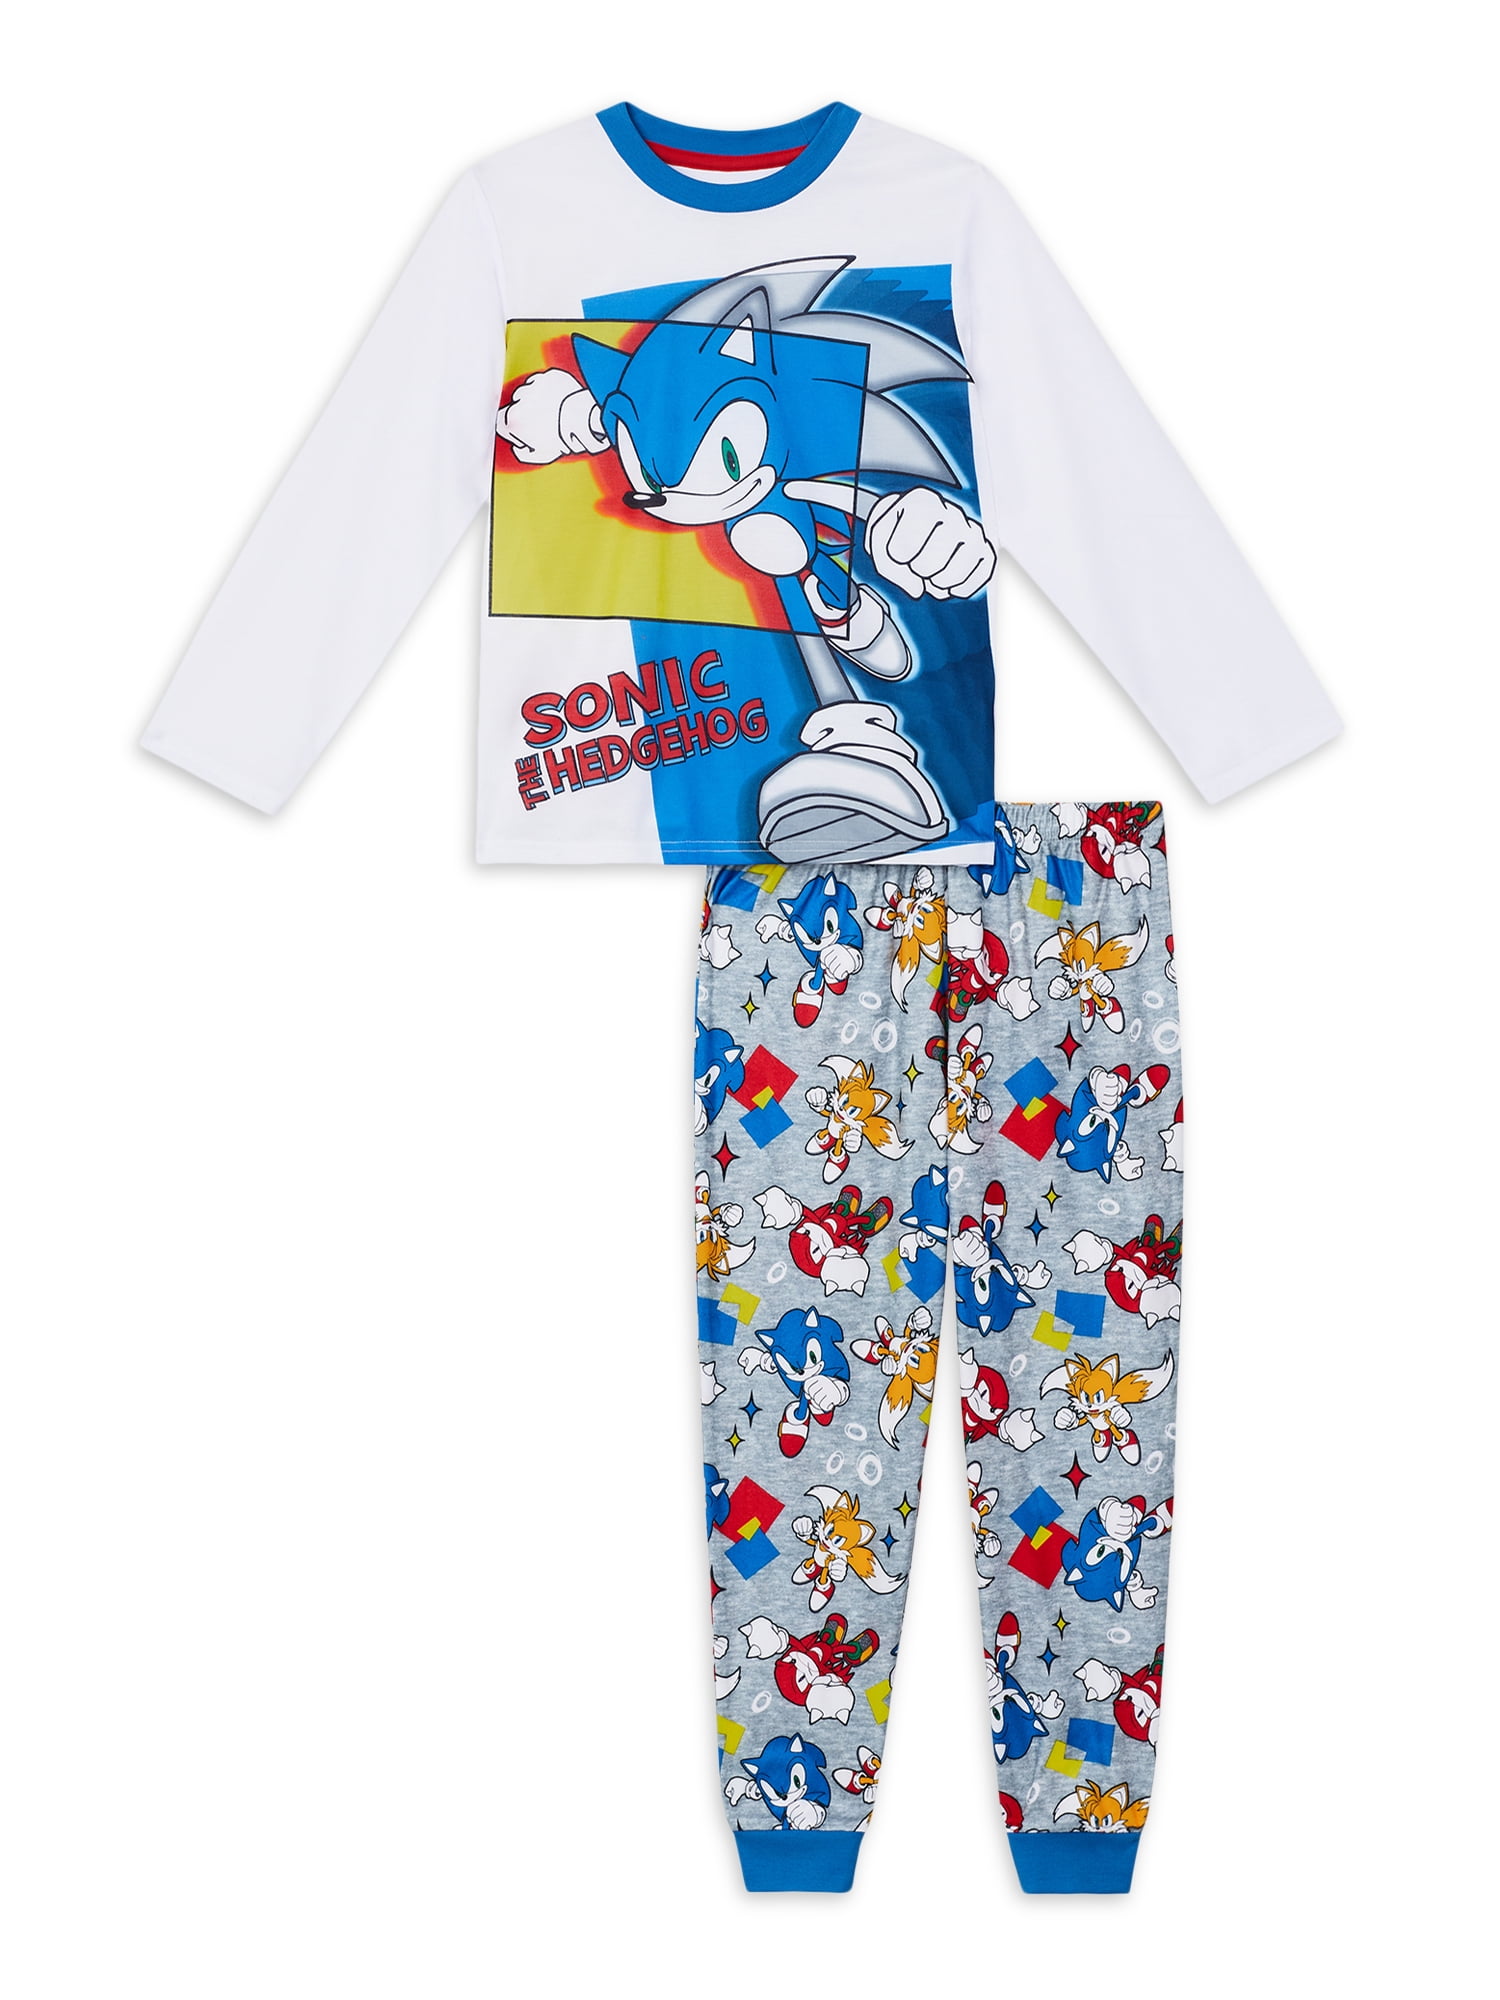 Boys BMX Pyjamas Pjs Extreme Sports Clothing Unisex Kids Clothing Pyjamas & Robes Pyjamas 